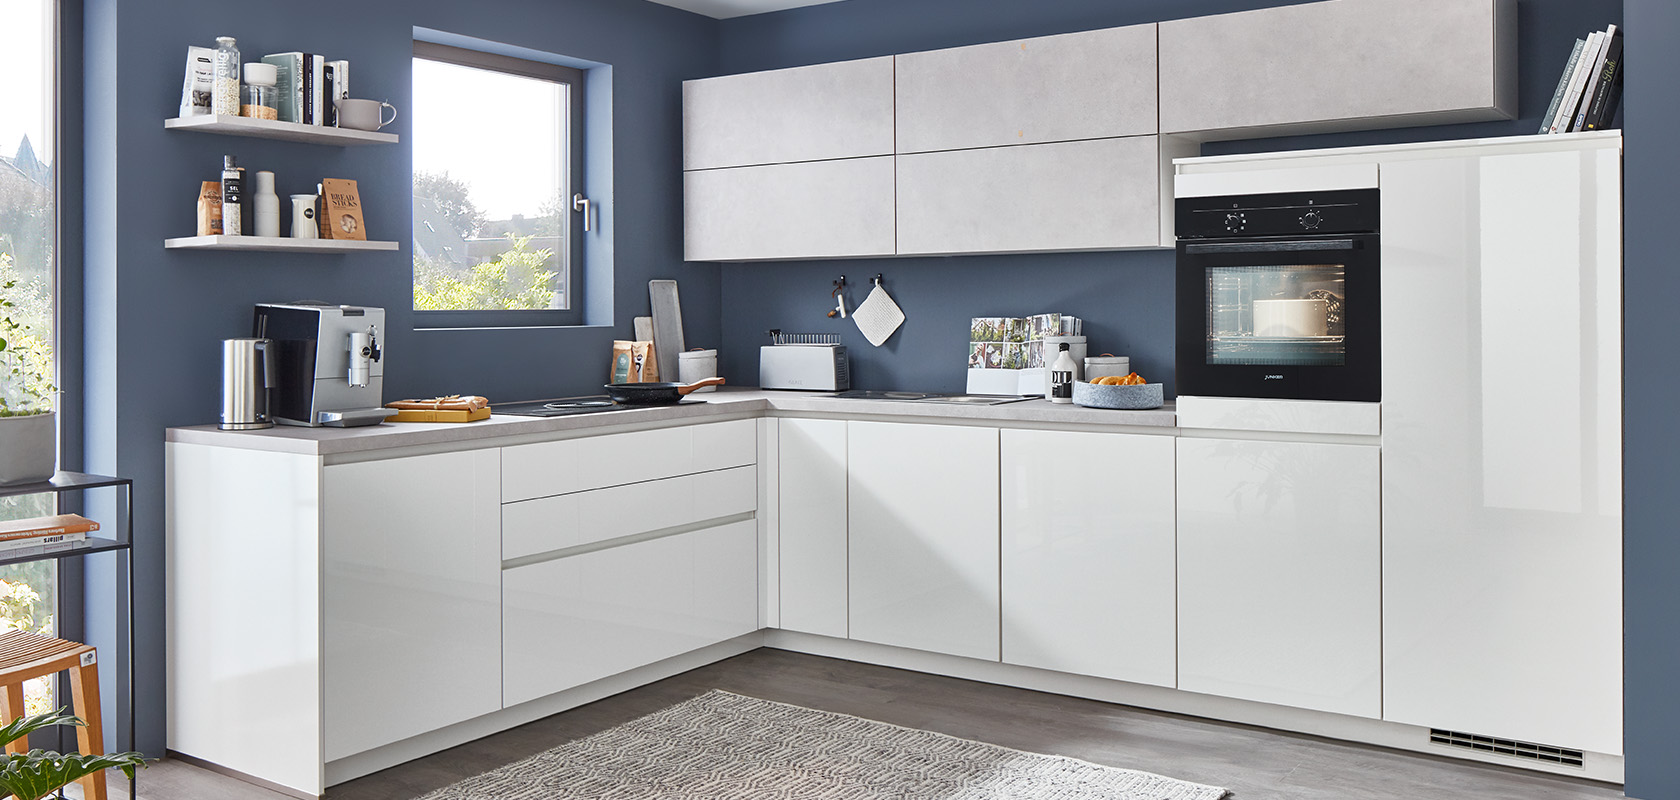 Moderní kuchyně s bílými skříňkami, elegantními spotřebiči a šedými doplňky. Pečlivě uspořádaný prostor s minimalistickým designem a pohodlnou, přívětivou atmosférou.